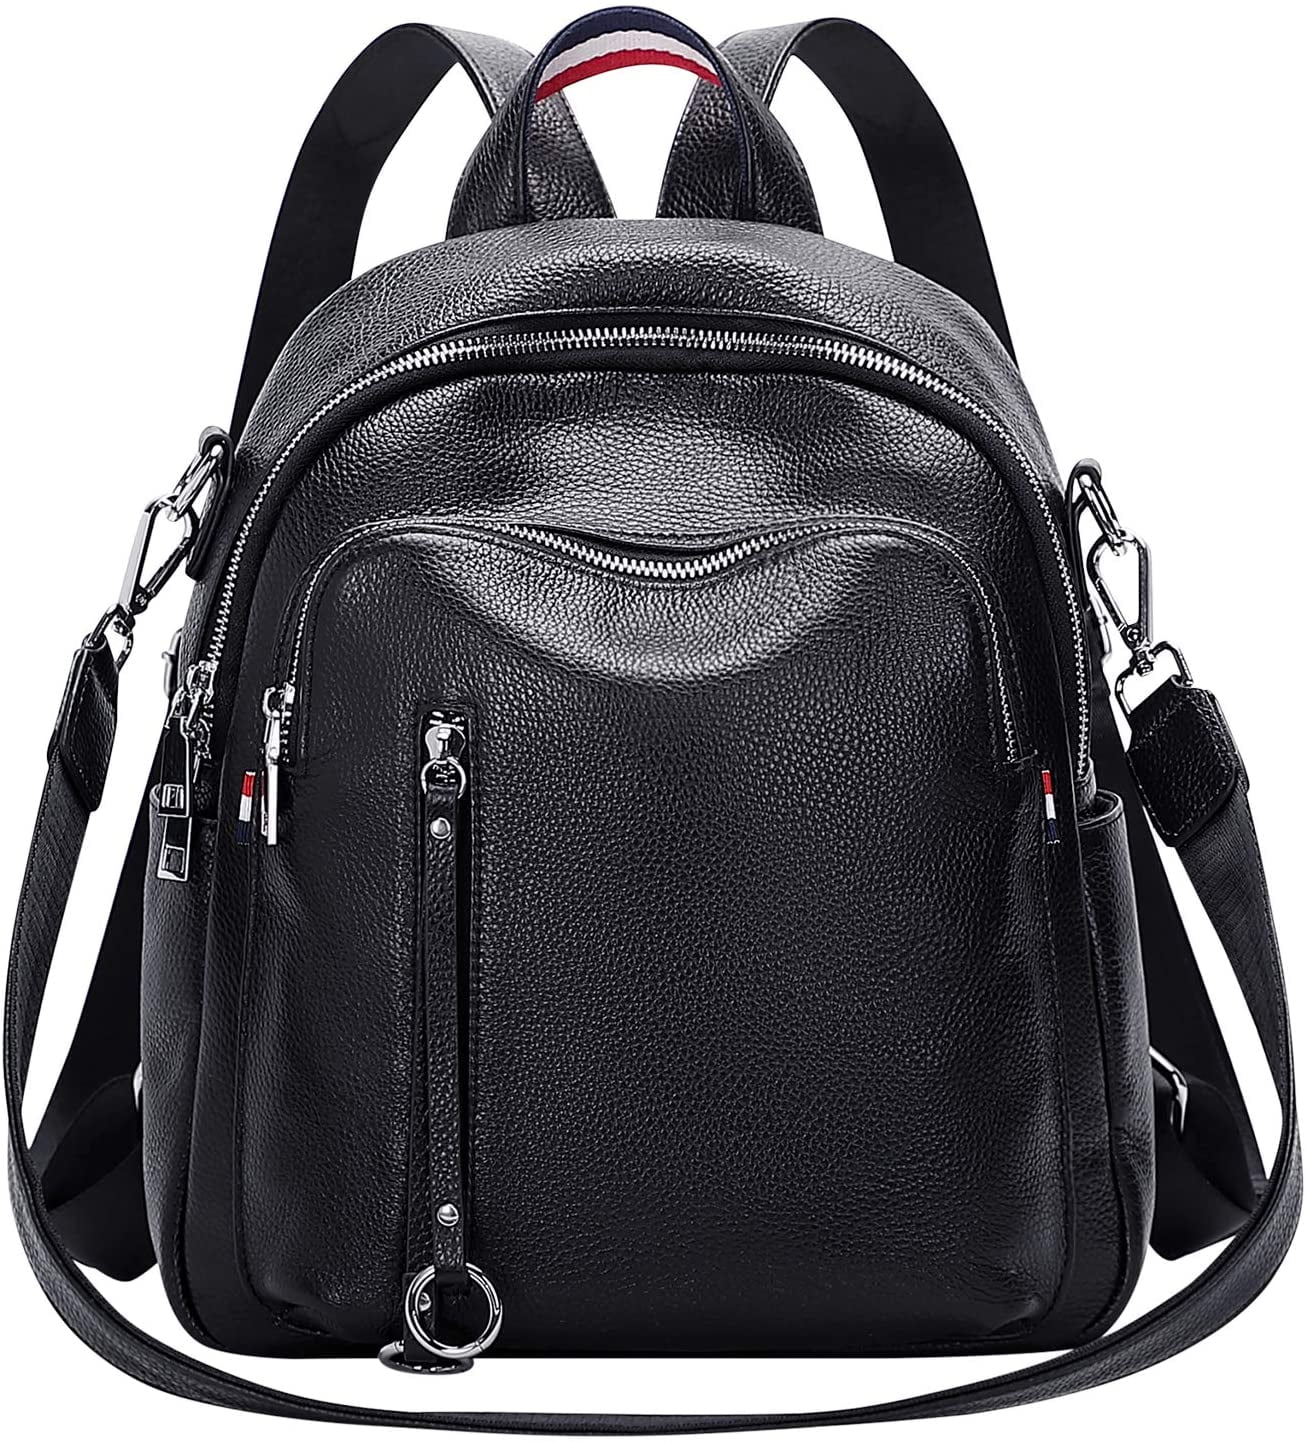 ALTOSY Genuine Leather Backpack for Women Fashion Shoulder Bag Satchel ...